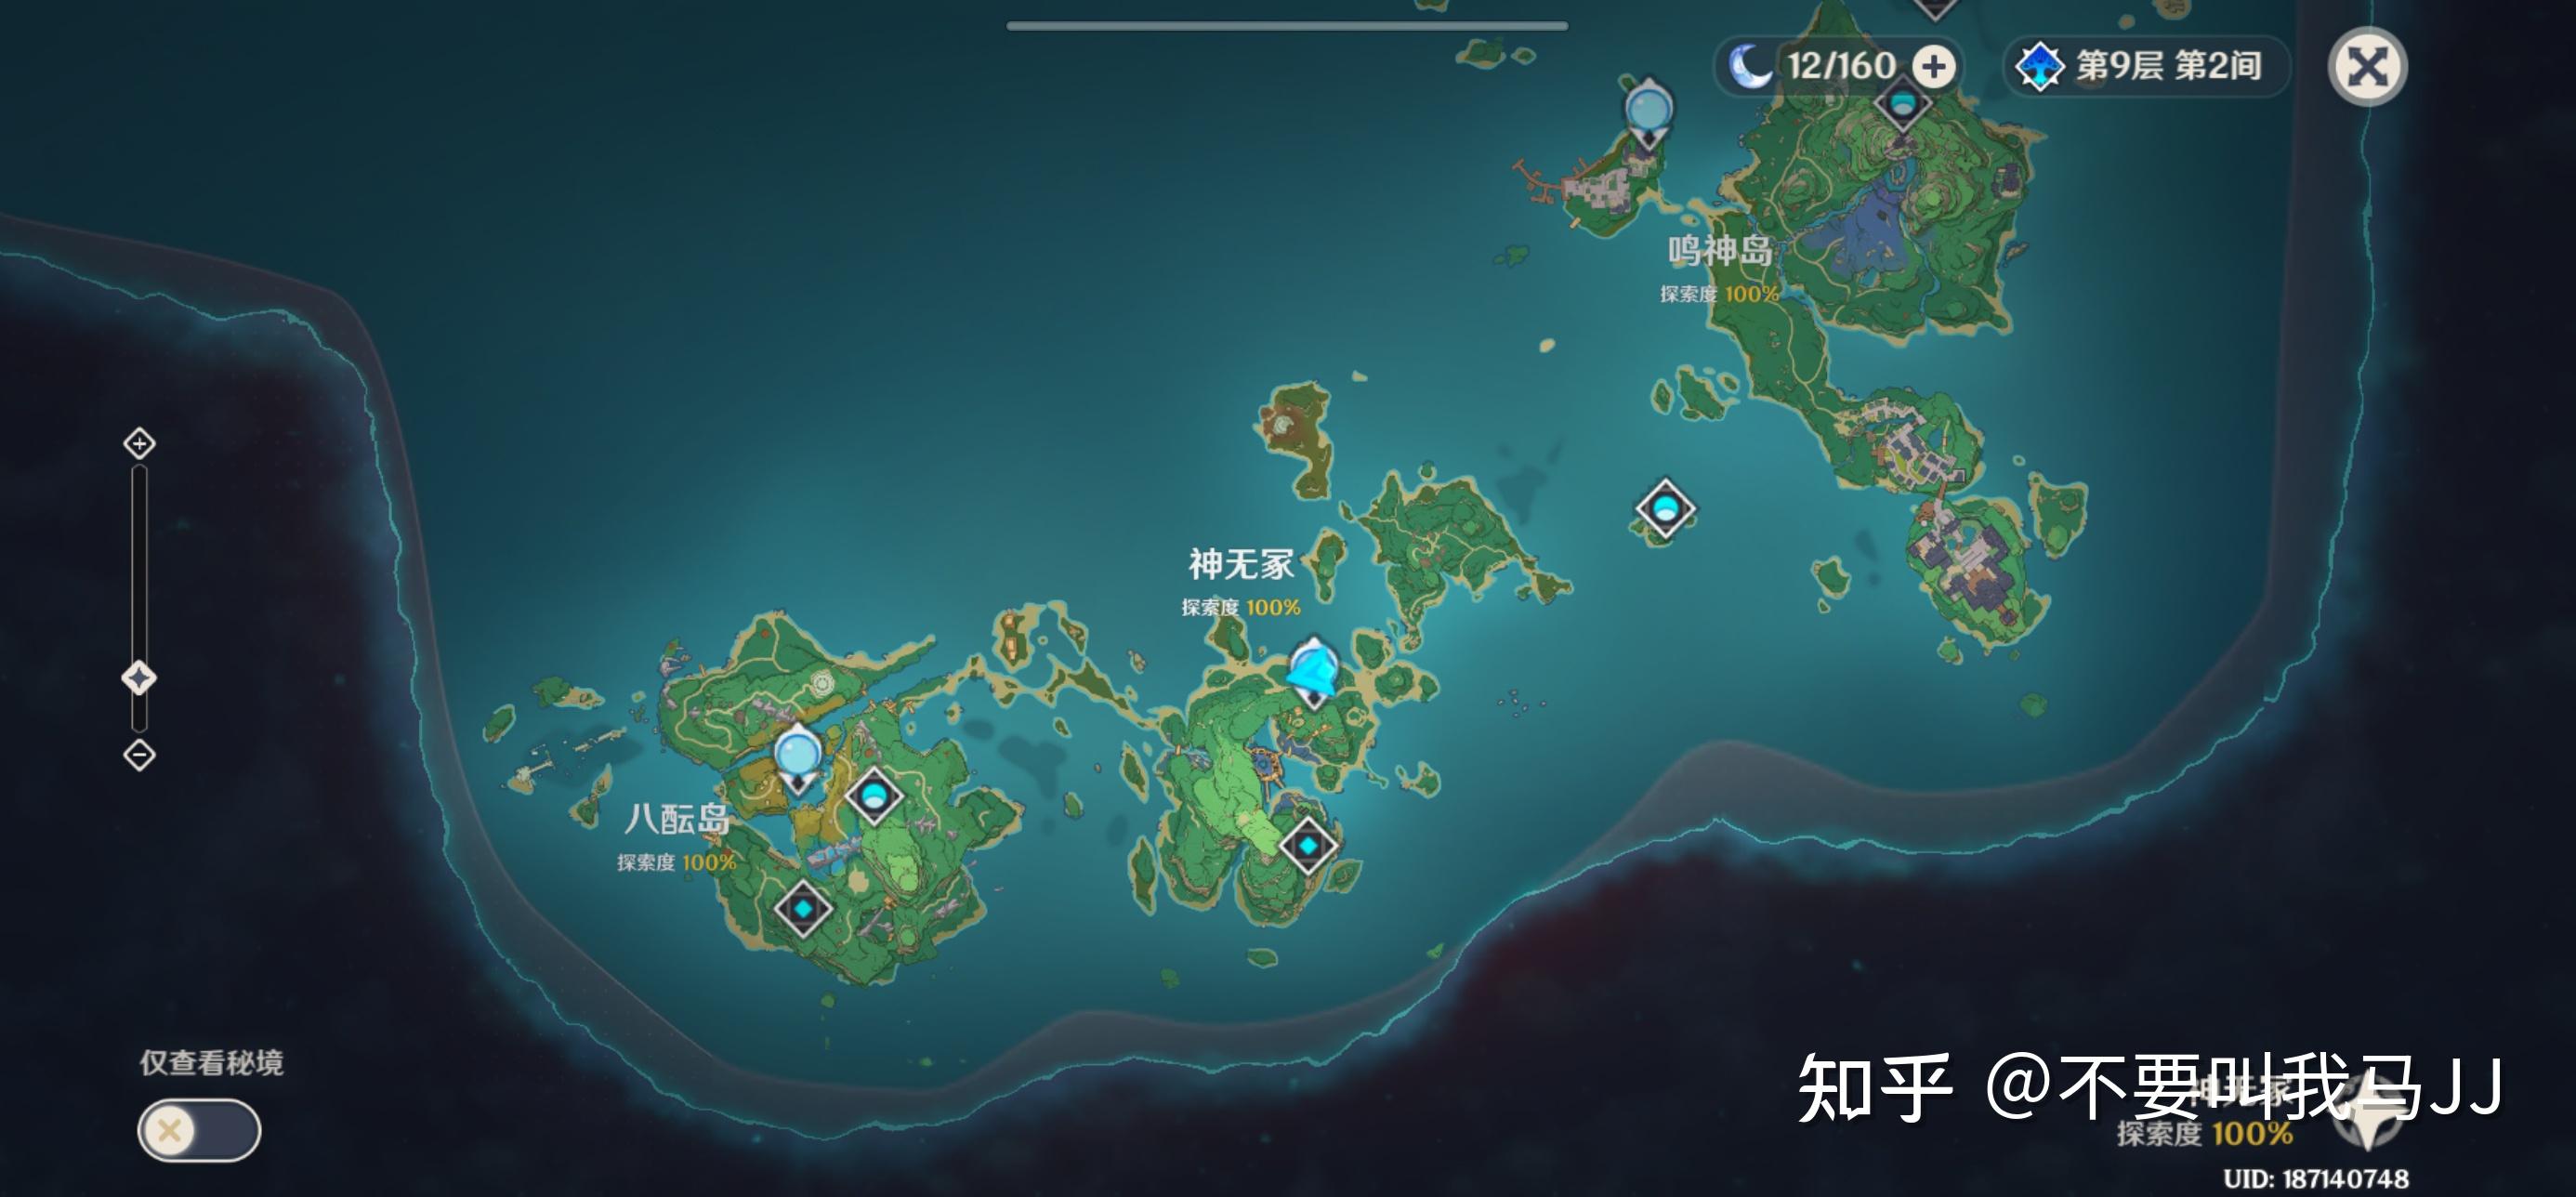 如何评价游戏原神20版本的稻妻地图